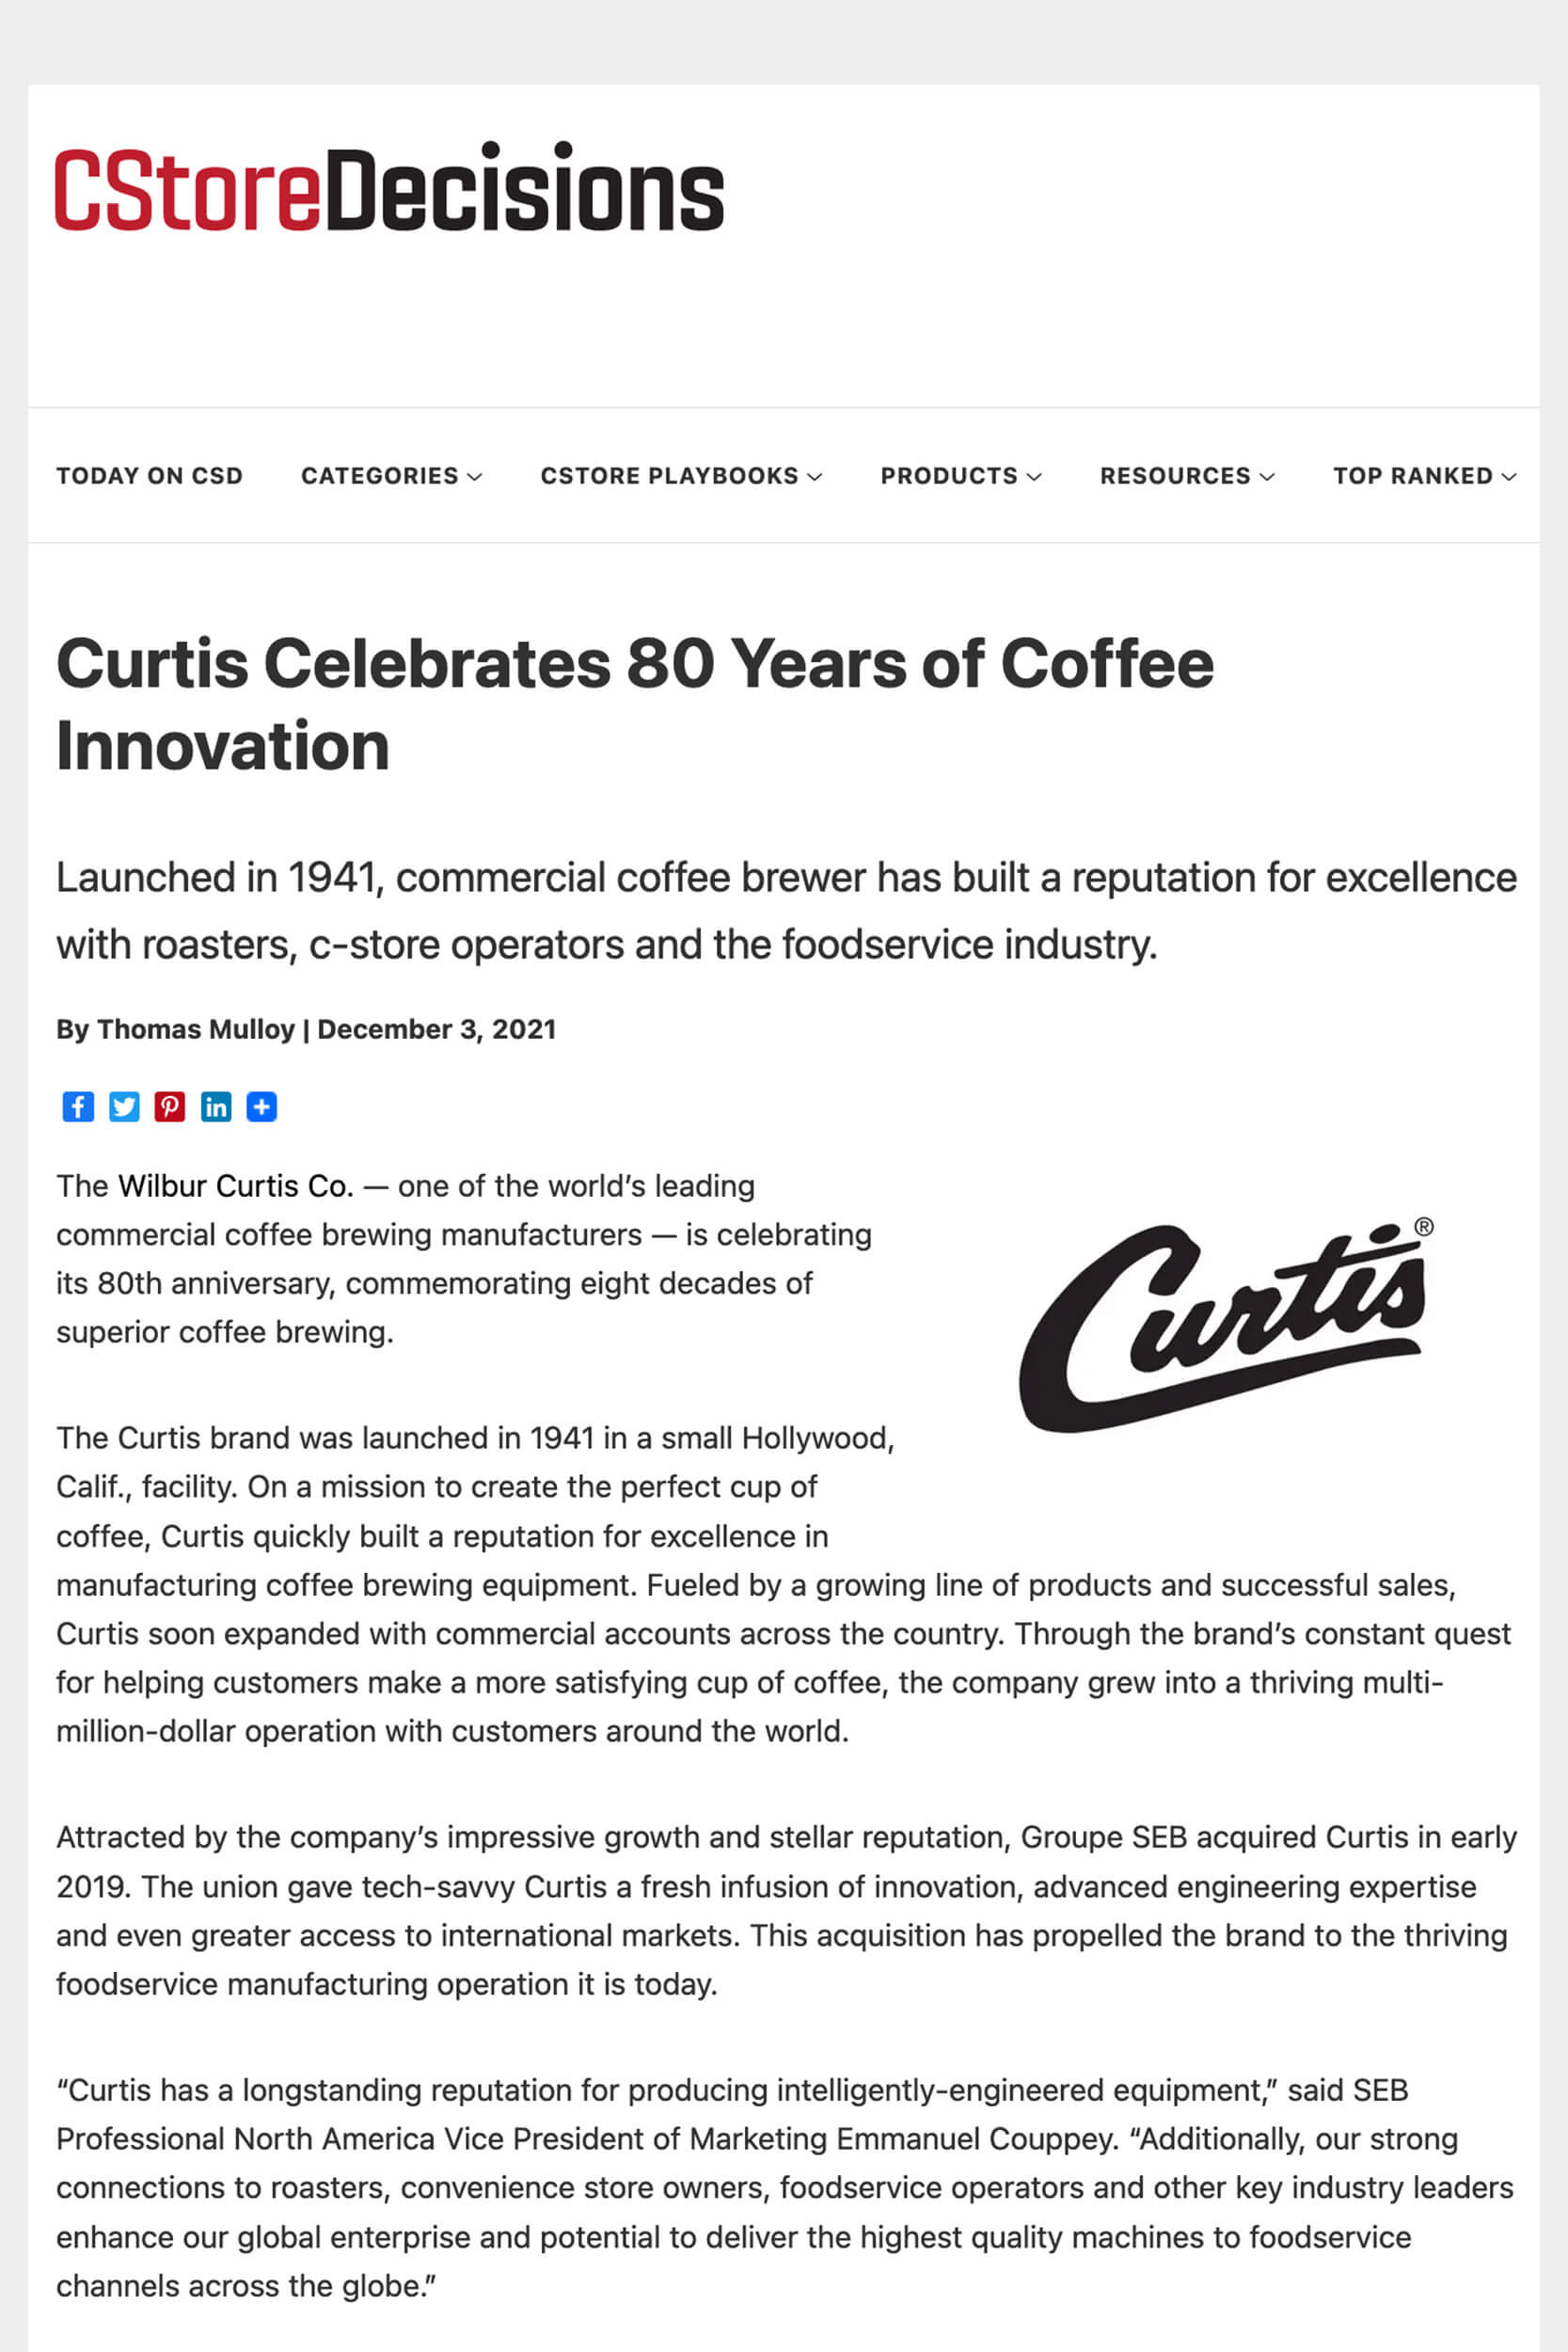 Curtis celebrates 80 years